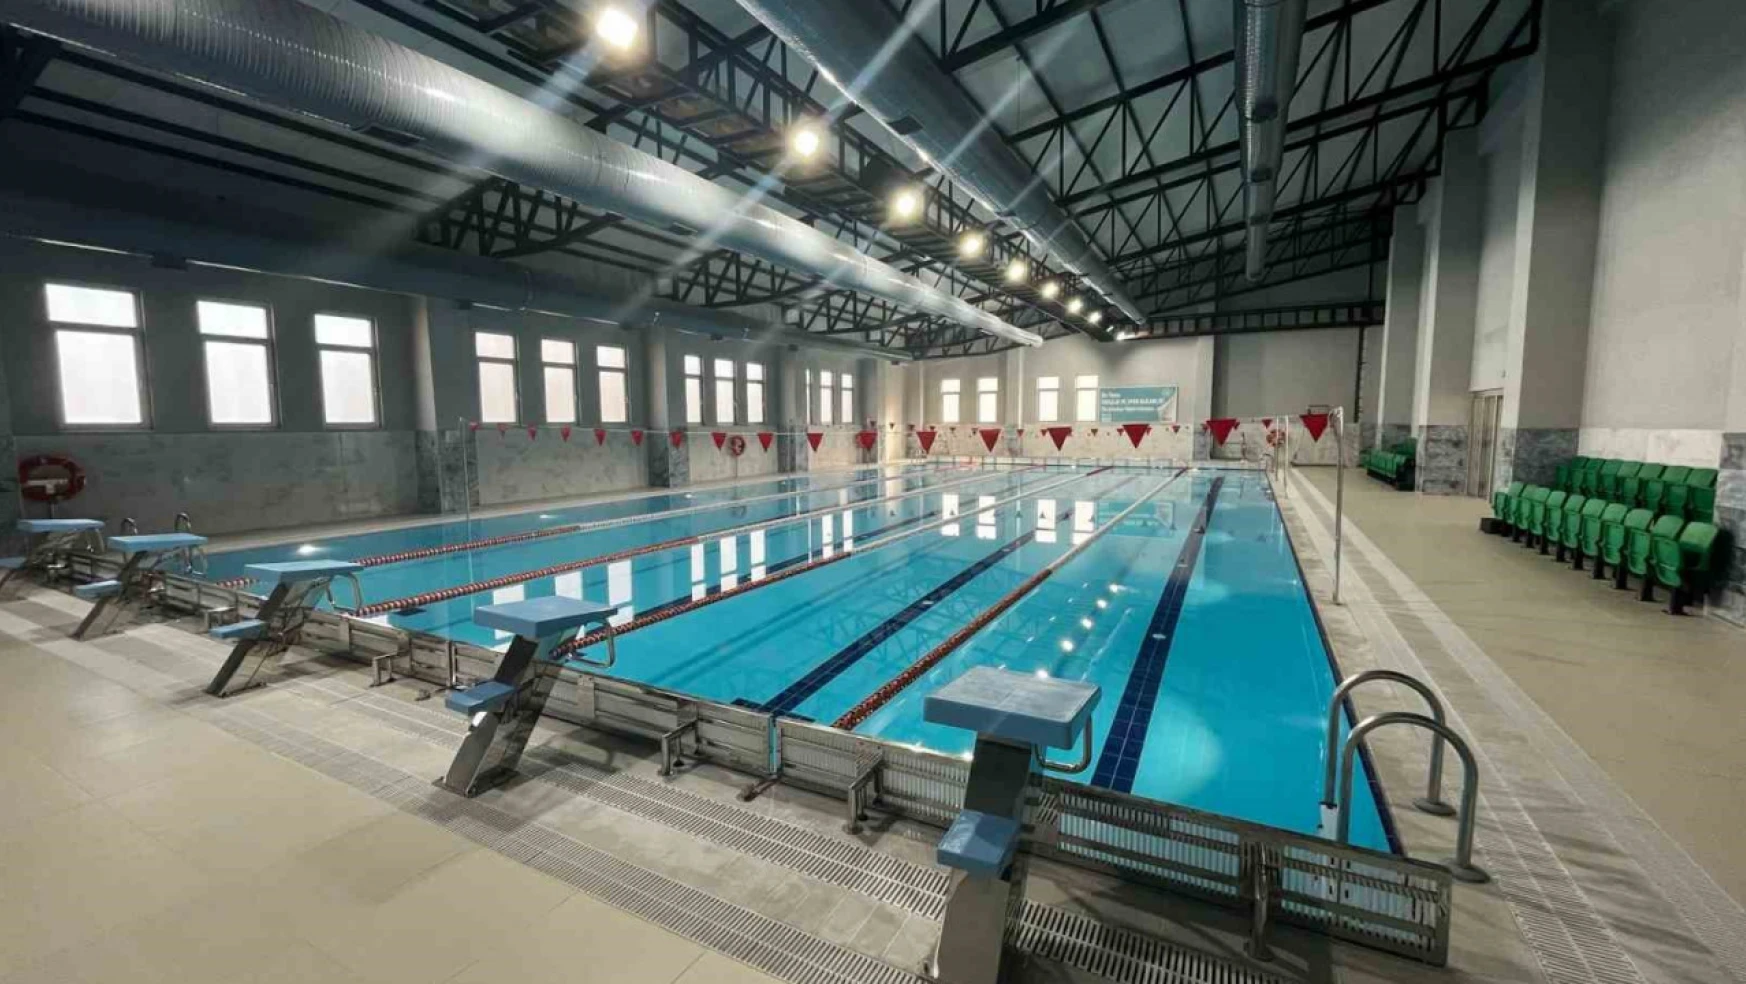 Bozdoğan Yarı Olimpik Yüzme Havuzu, açılış için gün sayıyor